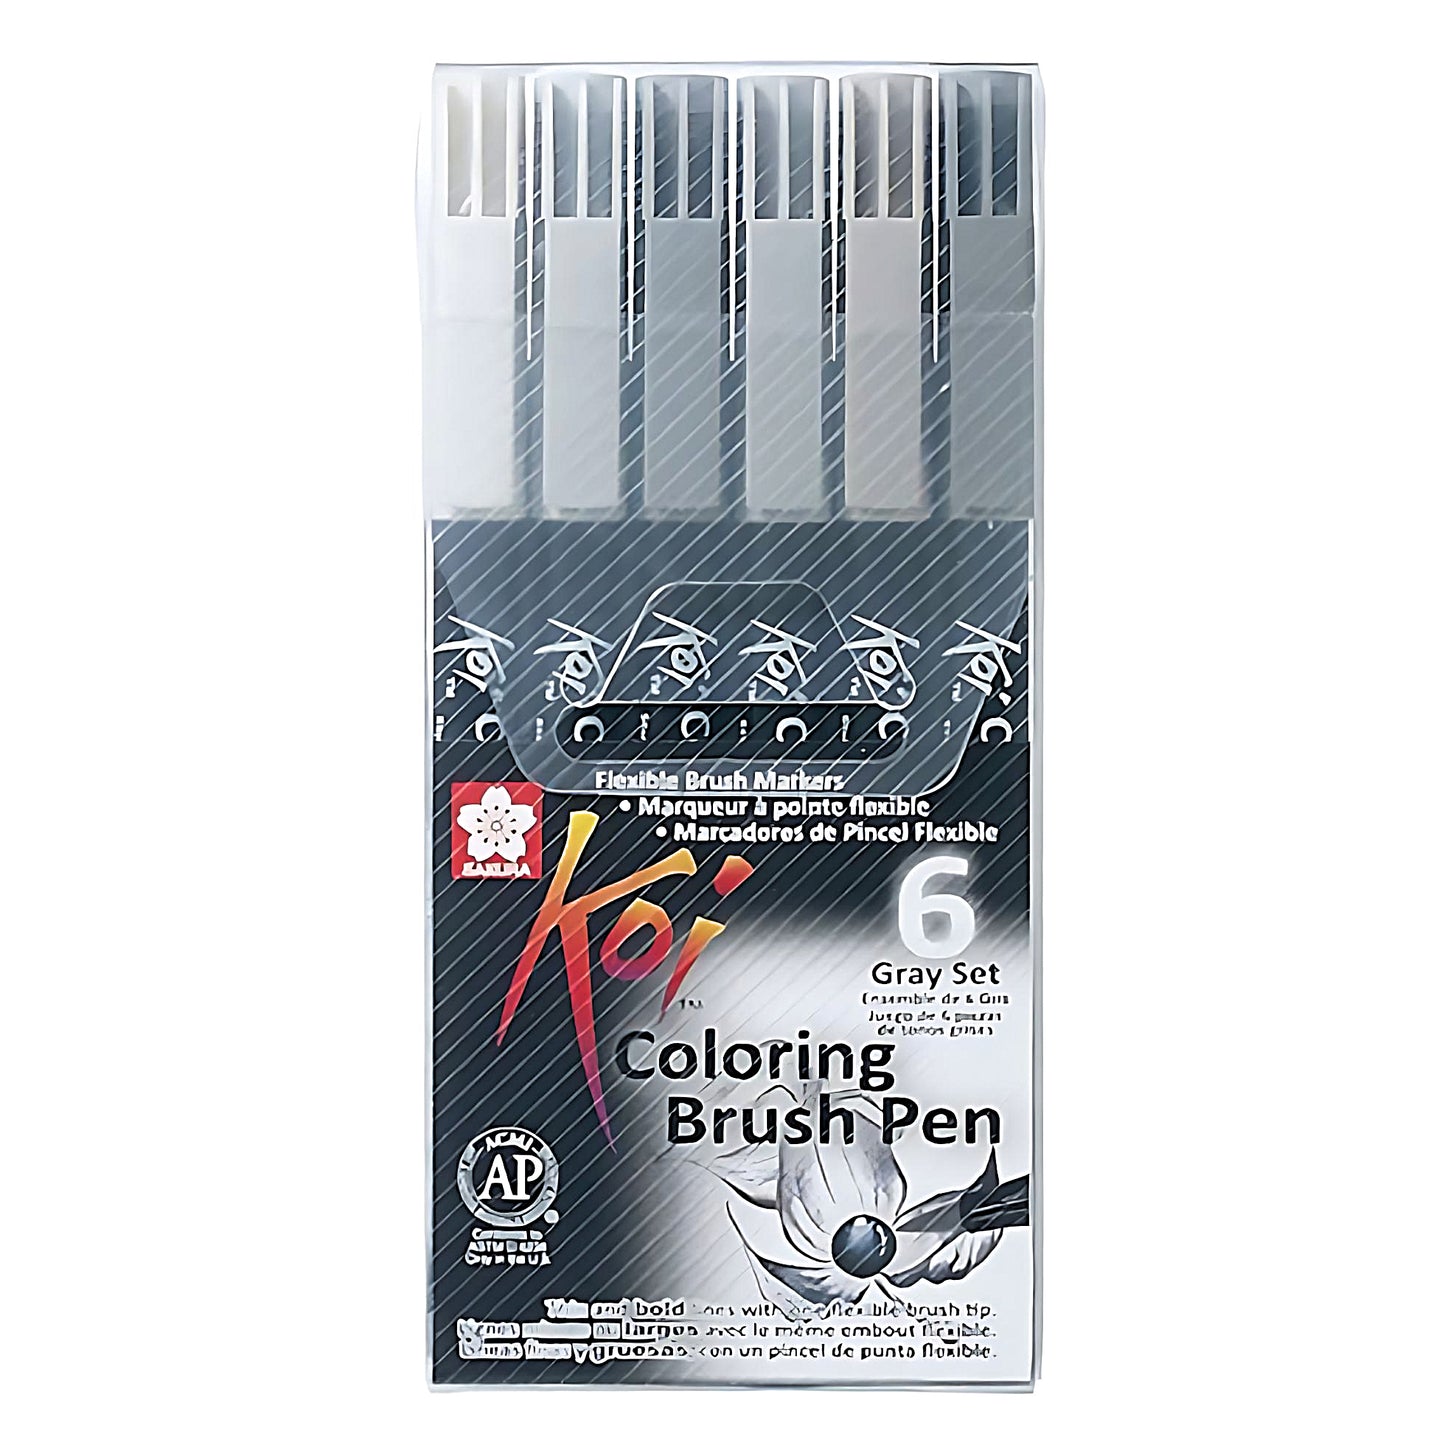 a set of 6 coloring brush pens Sakura Koi in grey colors